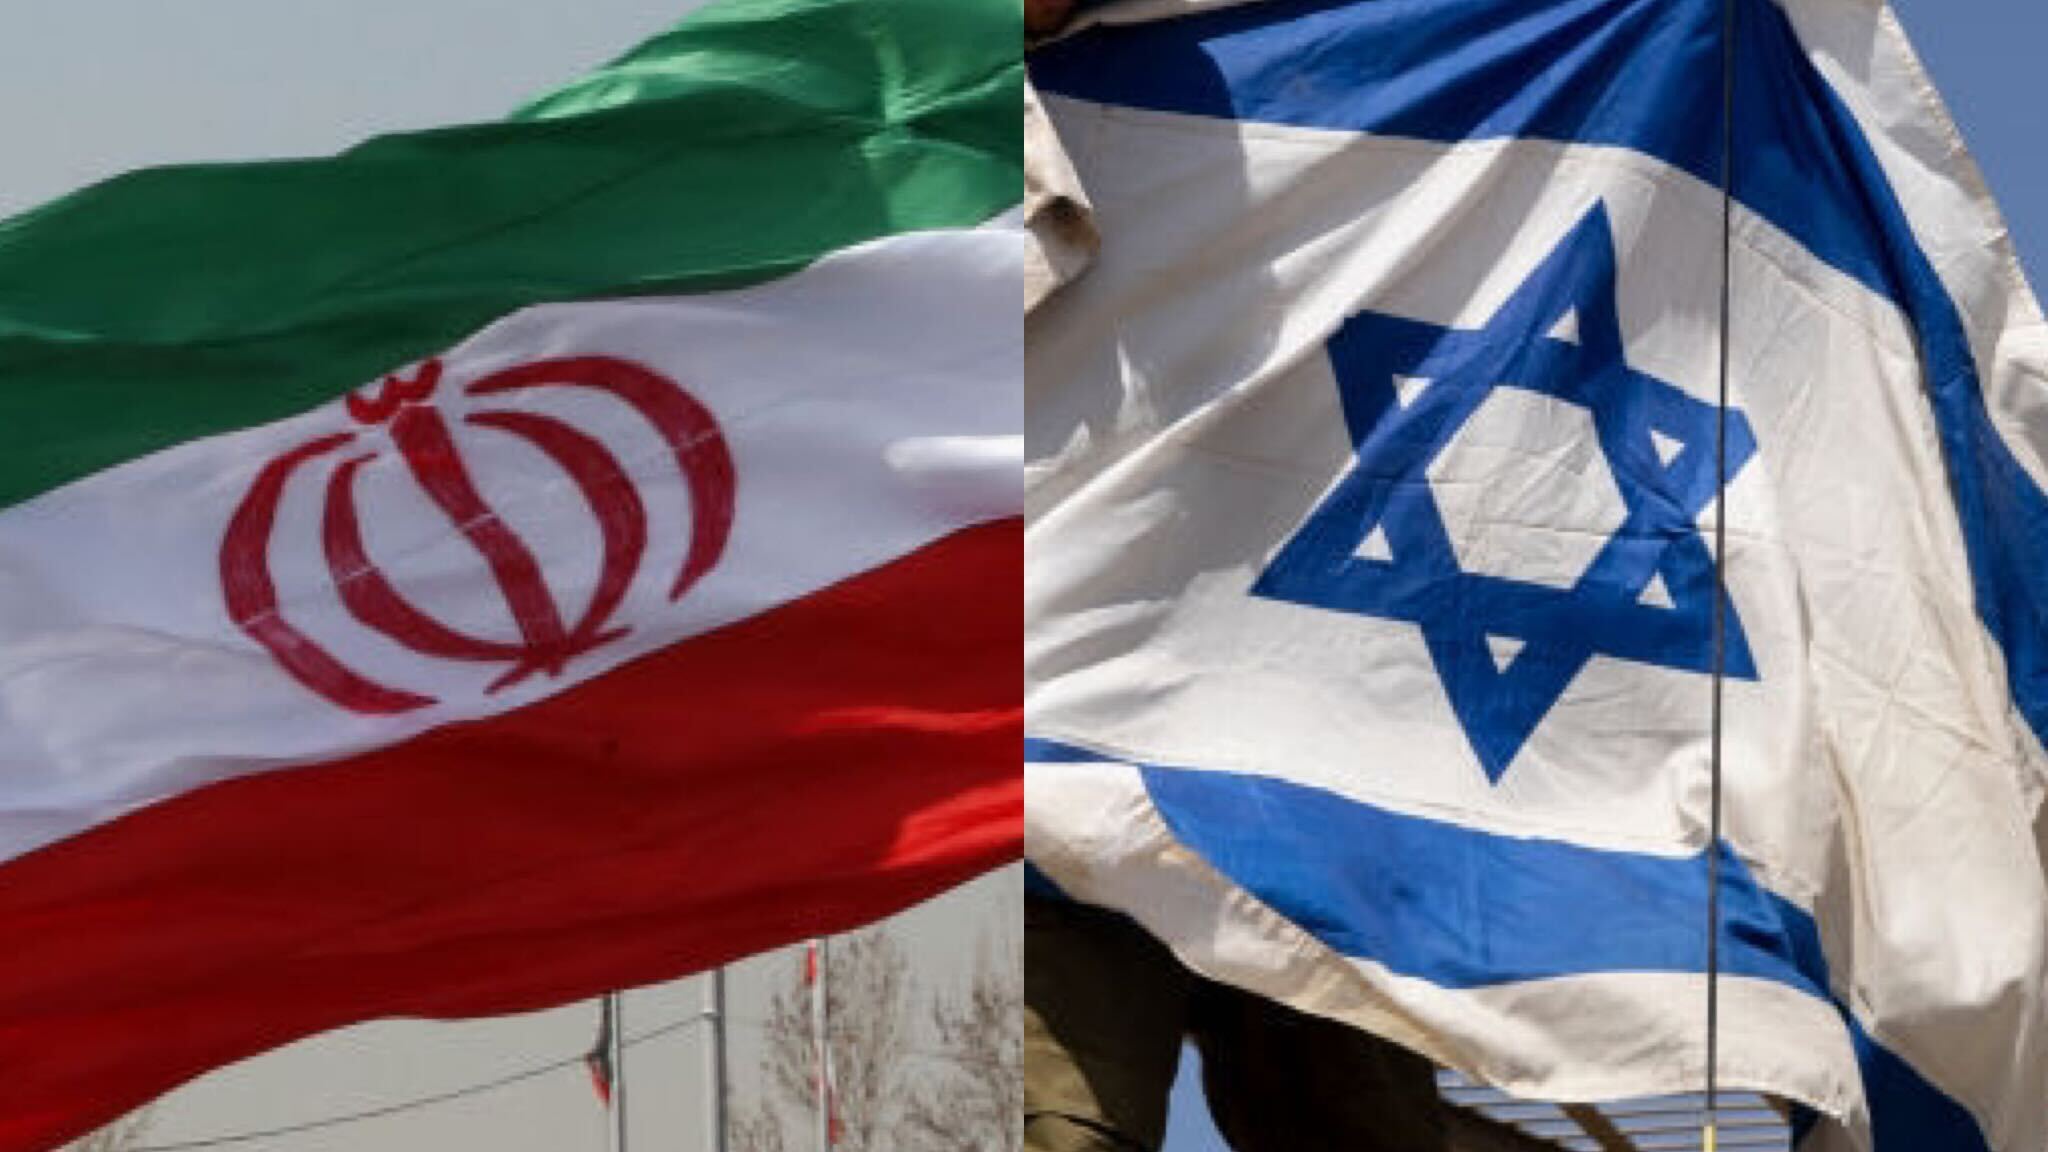 ¿Por qué Irán e Israel son enemigos? Este es el origen de las
relaciones entre ambos países